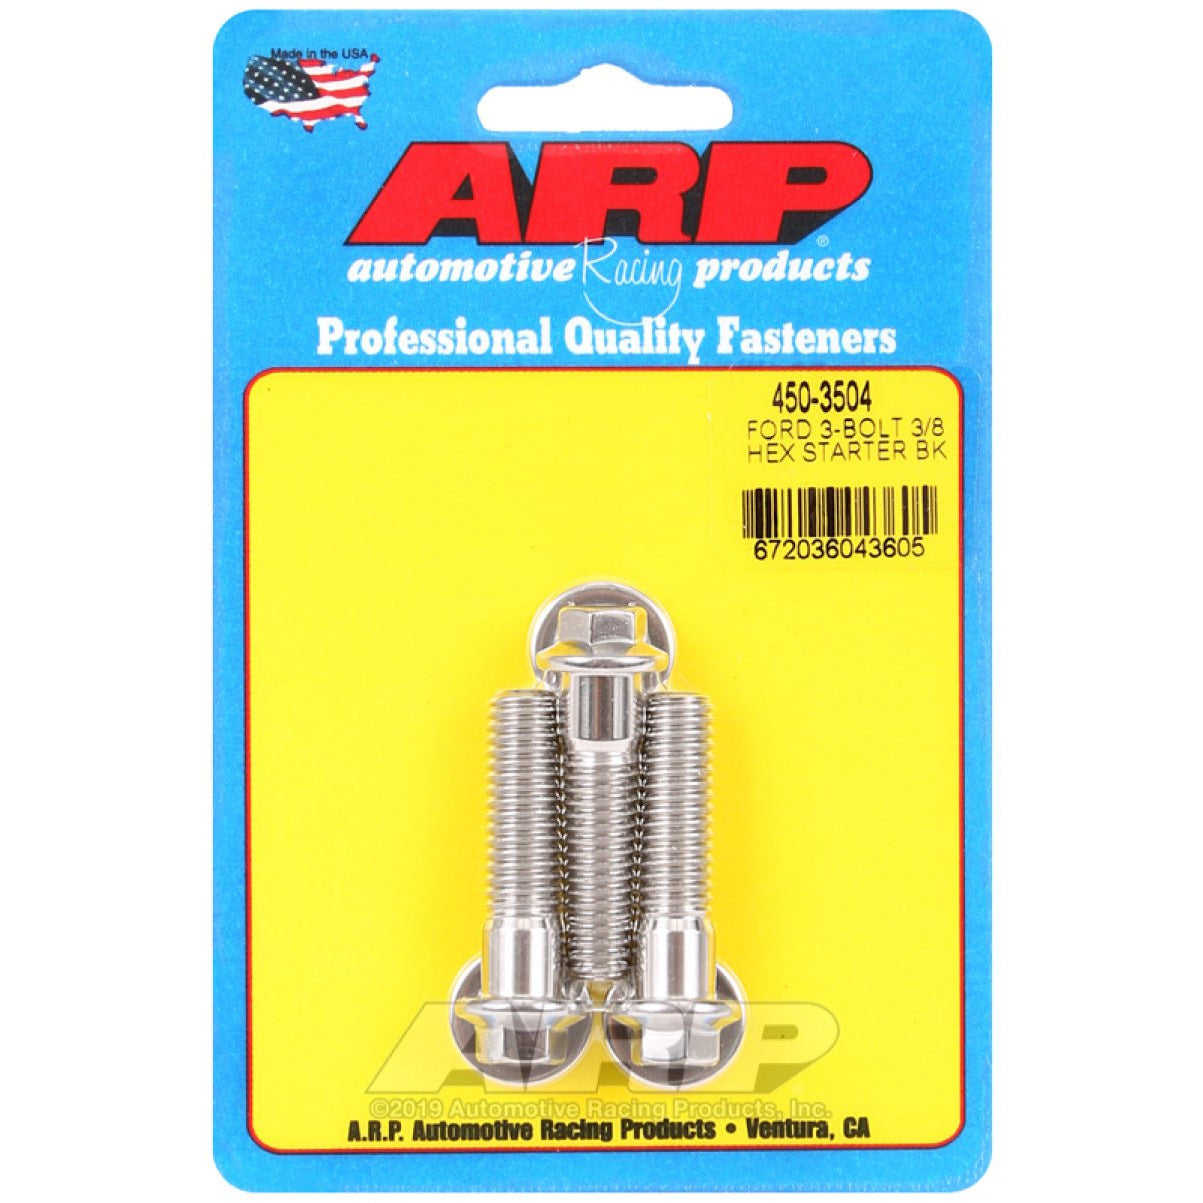 ARP Ford SS 3-Bolt Hex Starter Bolt Kit ARP Hardware Kits - Other